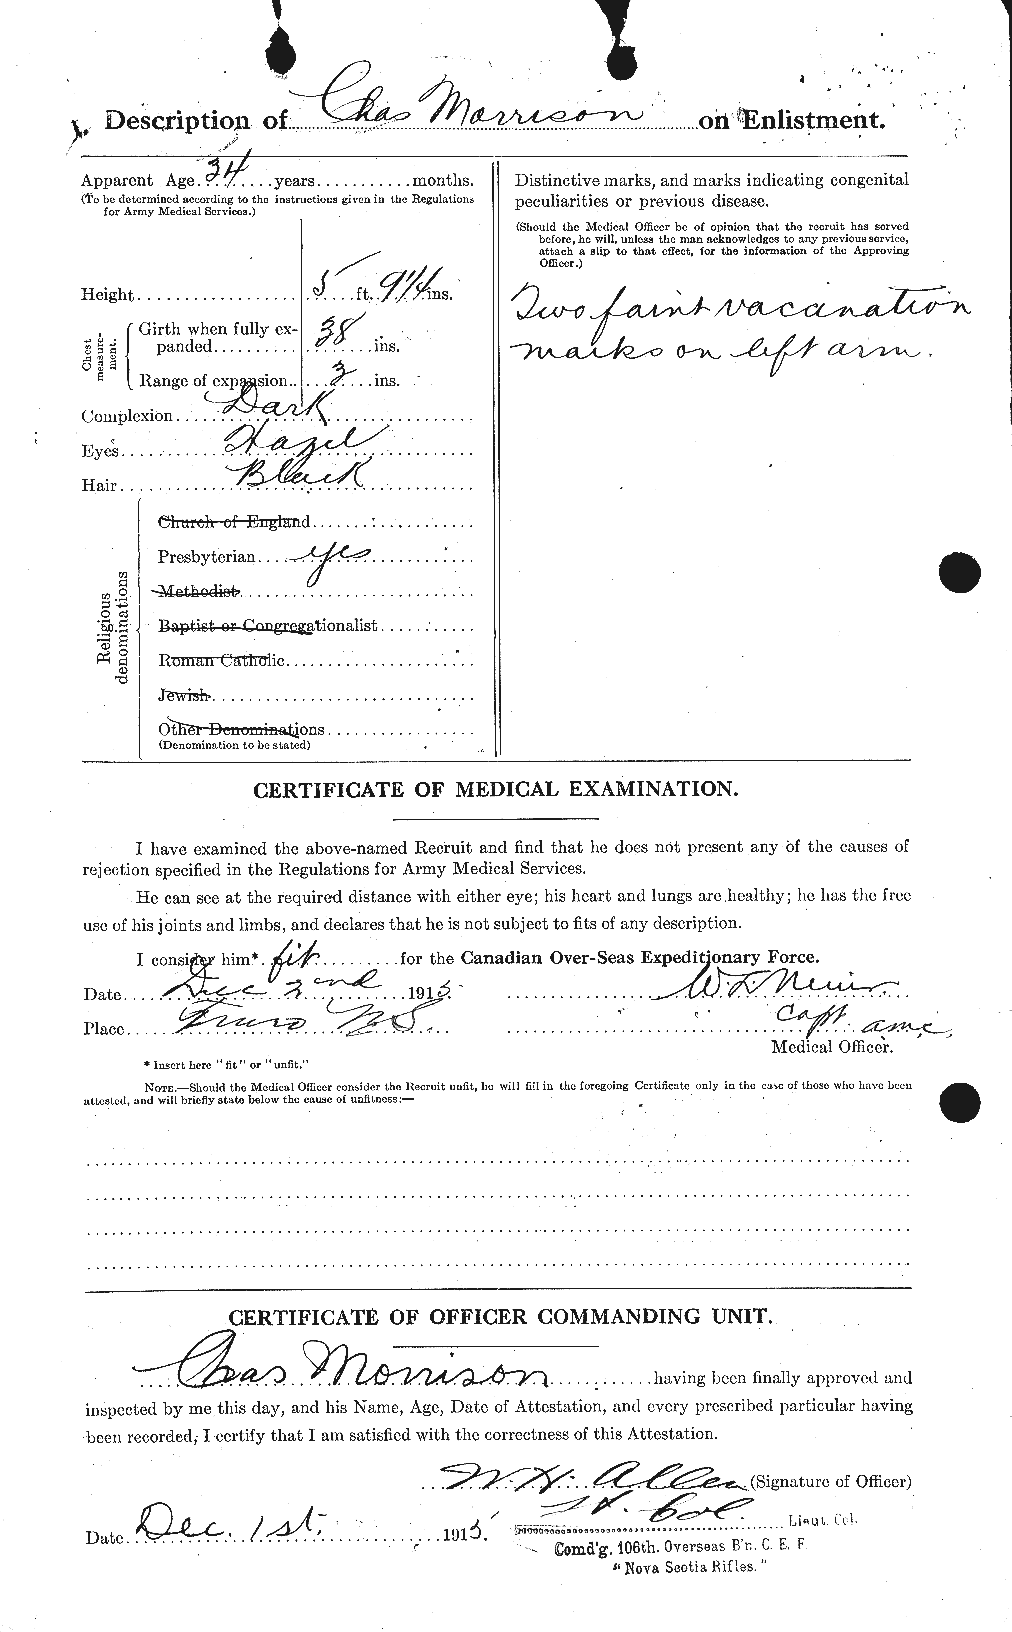 Dossiers du Personnel de la Première Guerre mondiale - CEC 505345b